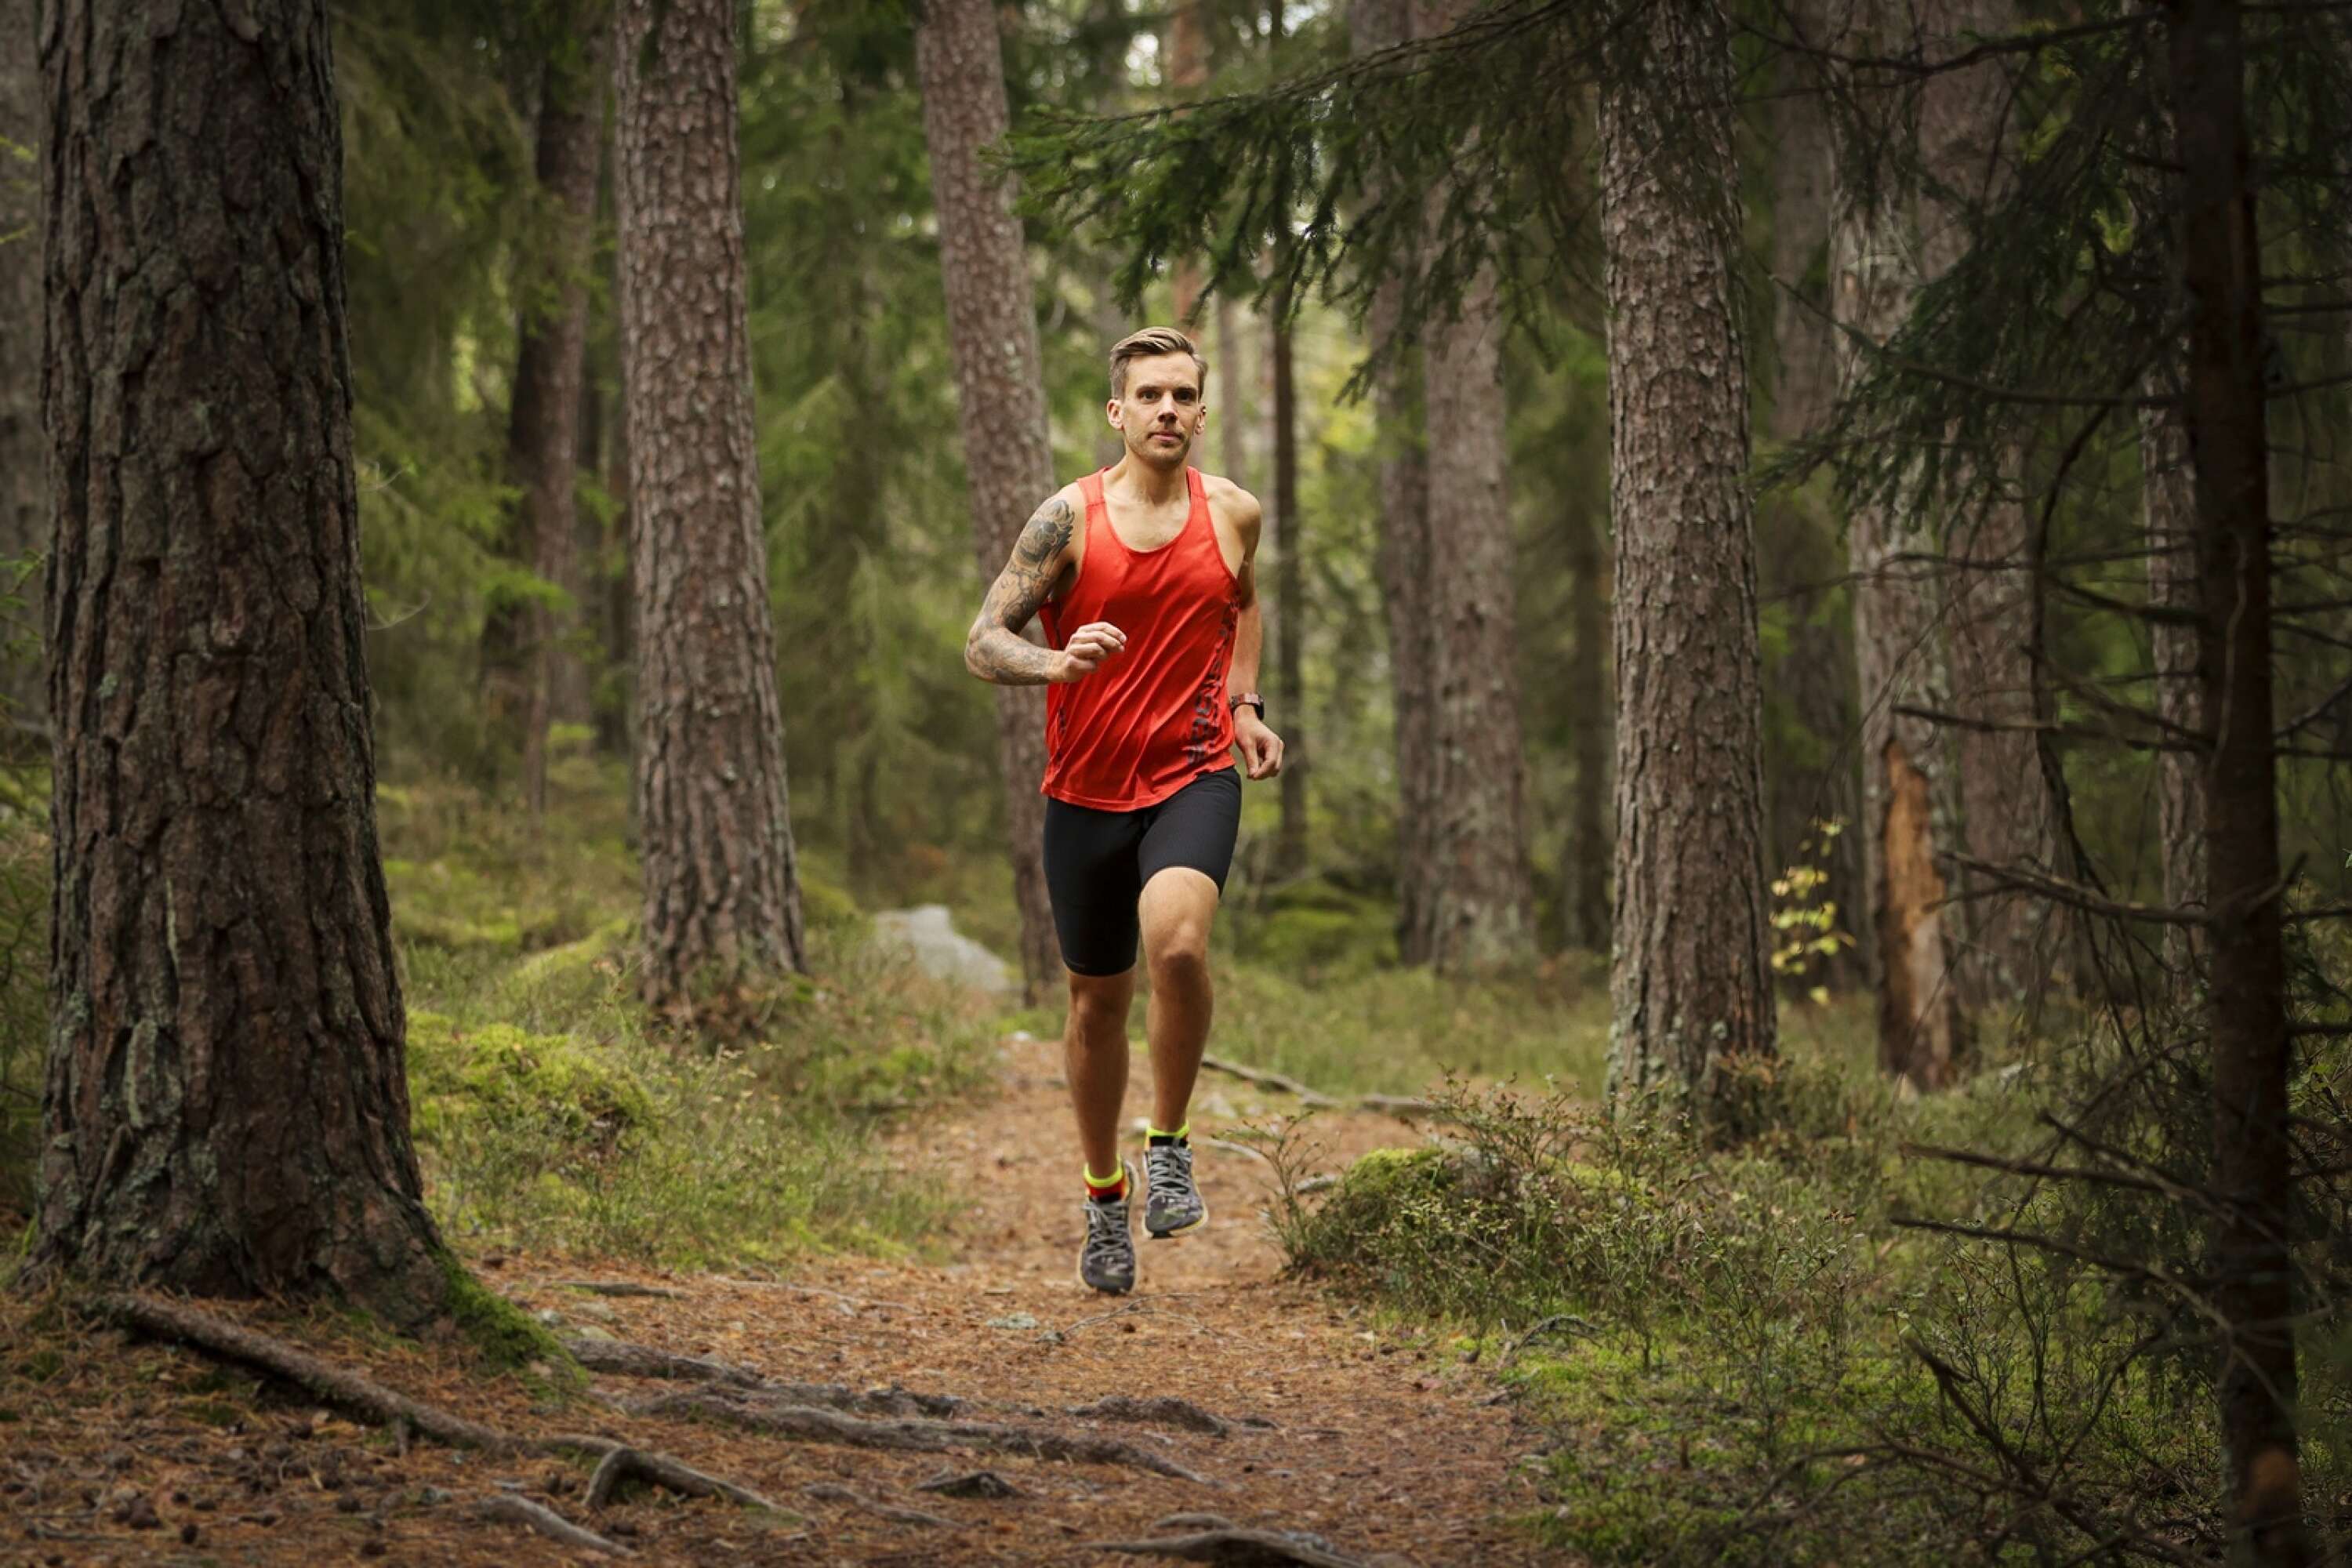 Från hundra kilo till hundra miles. För Mattias Edlund blev löpningen en hälsoaktivitet. Ultralöpning har blivit en livsstil.